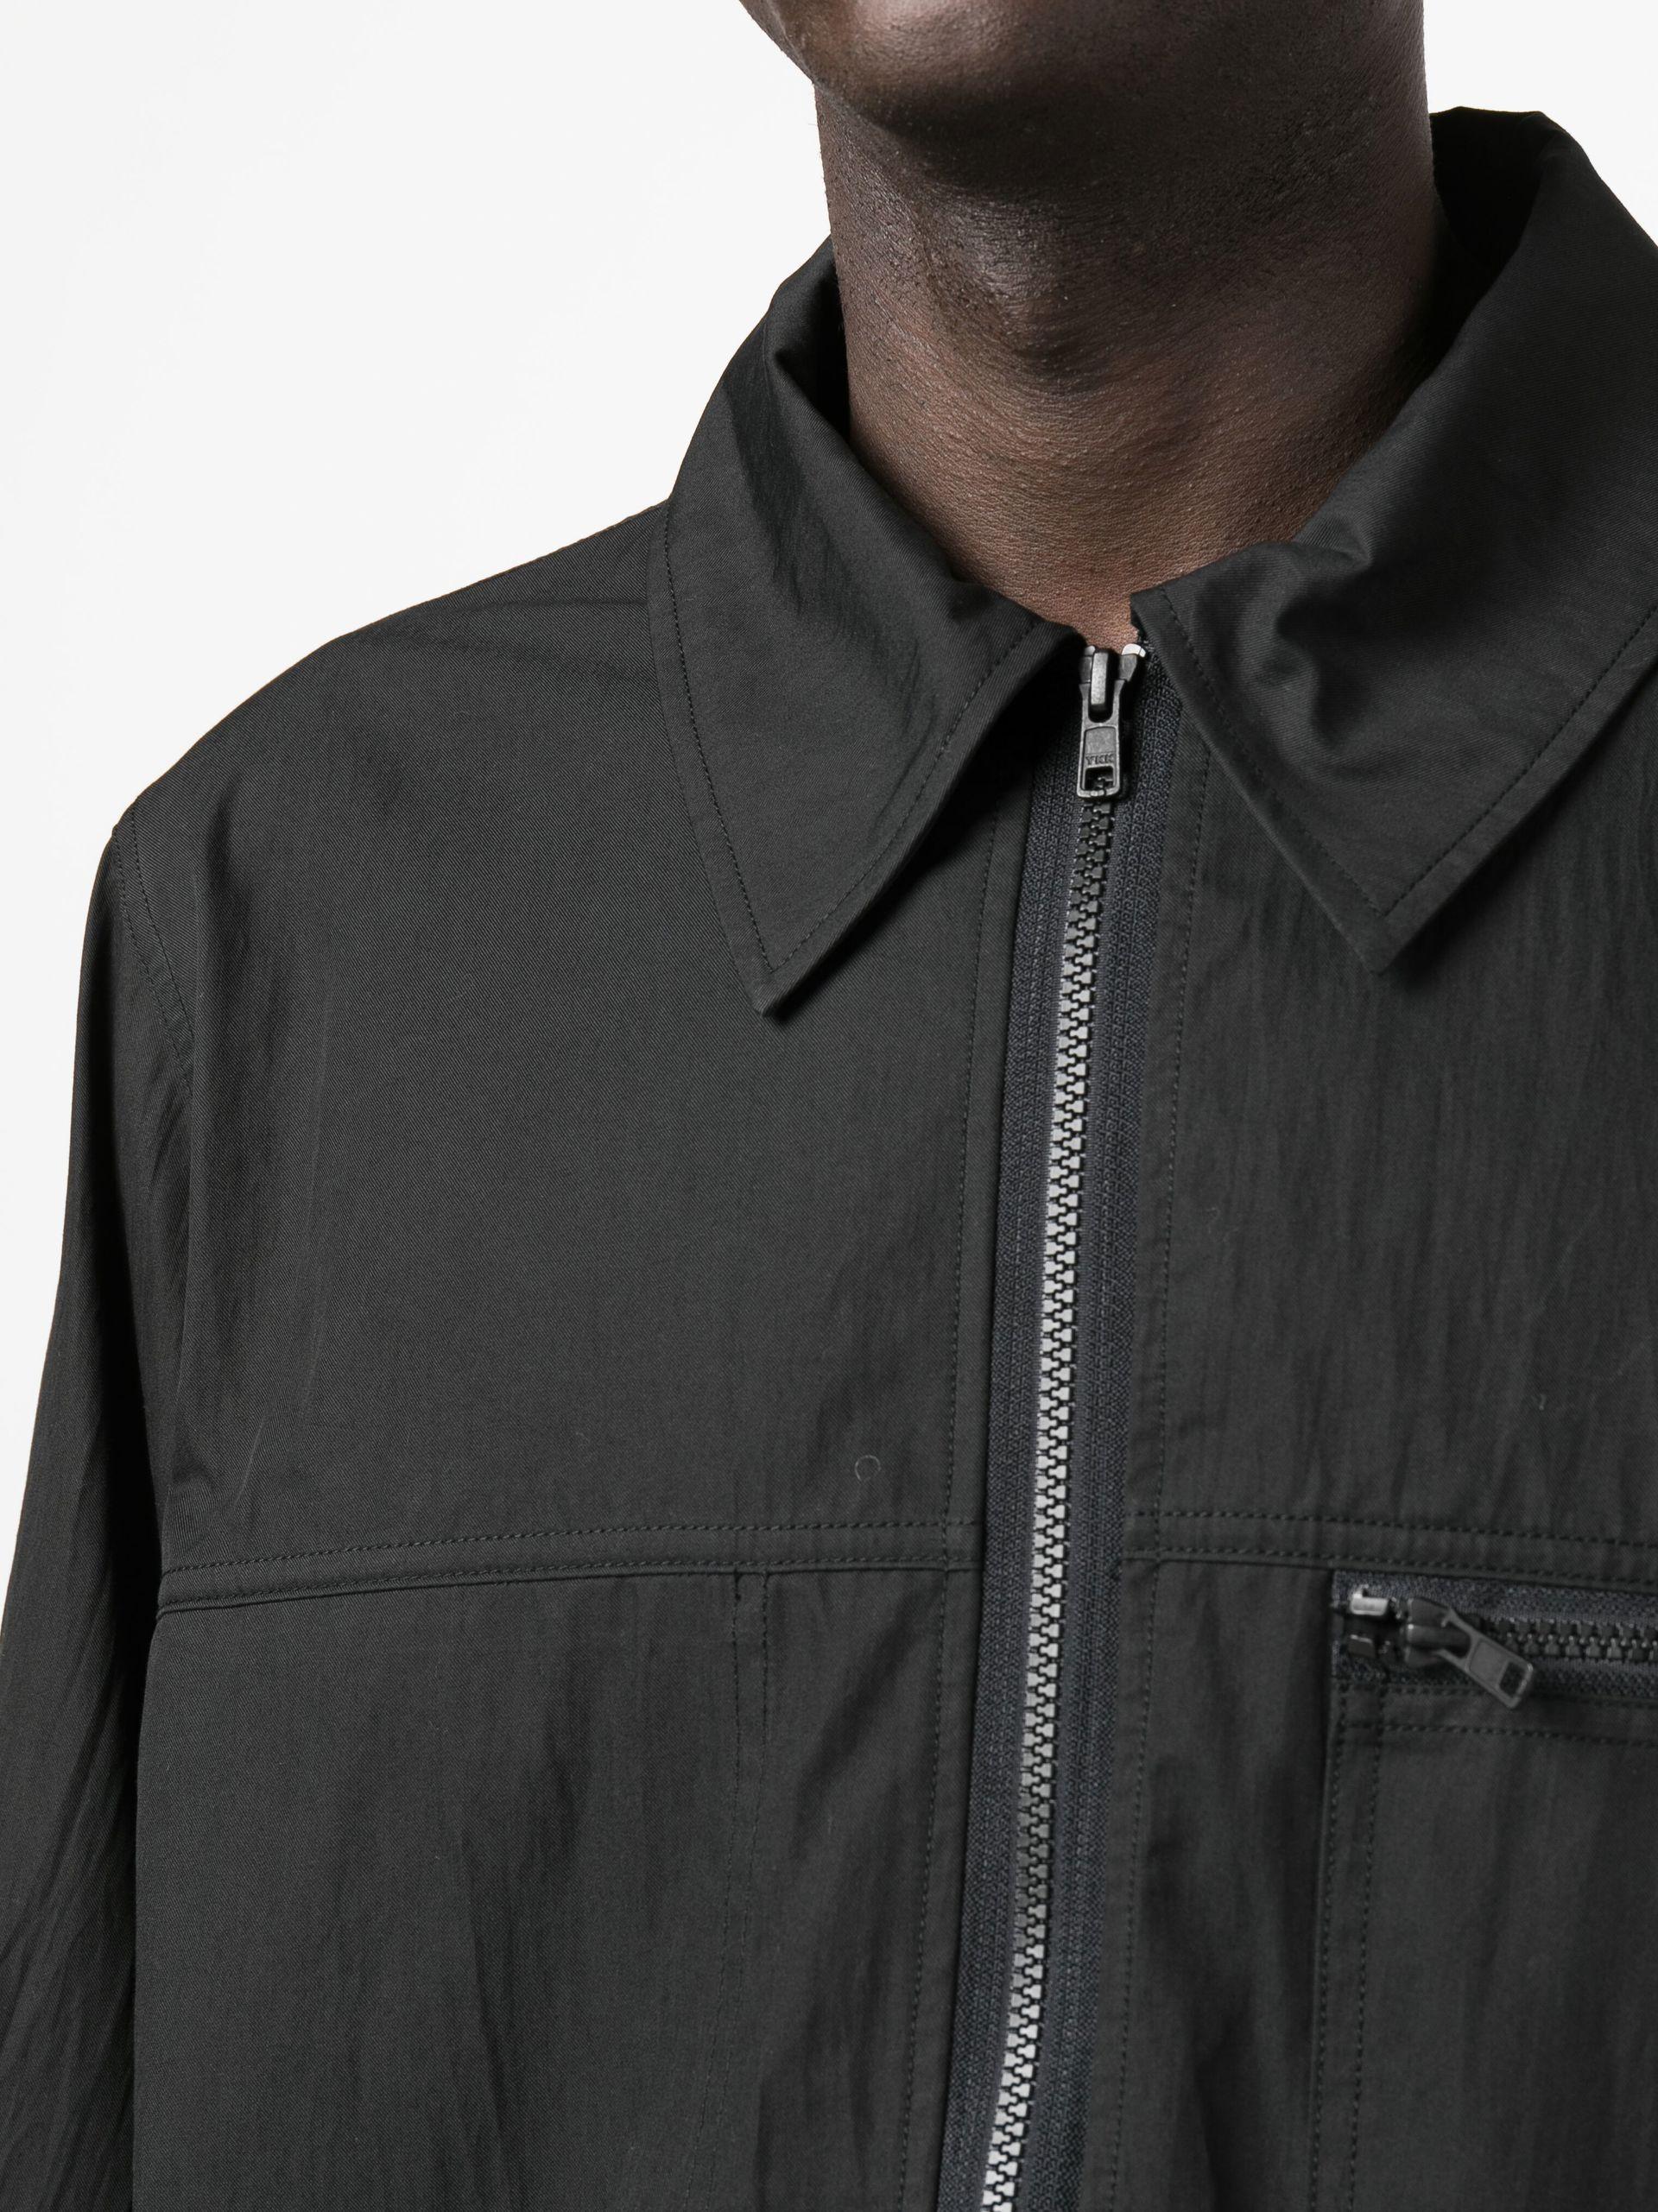 Studio Nicholson Zip-up Shirt Jacket in Black for Men | Lyst